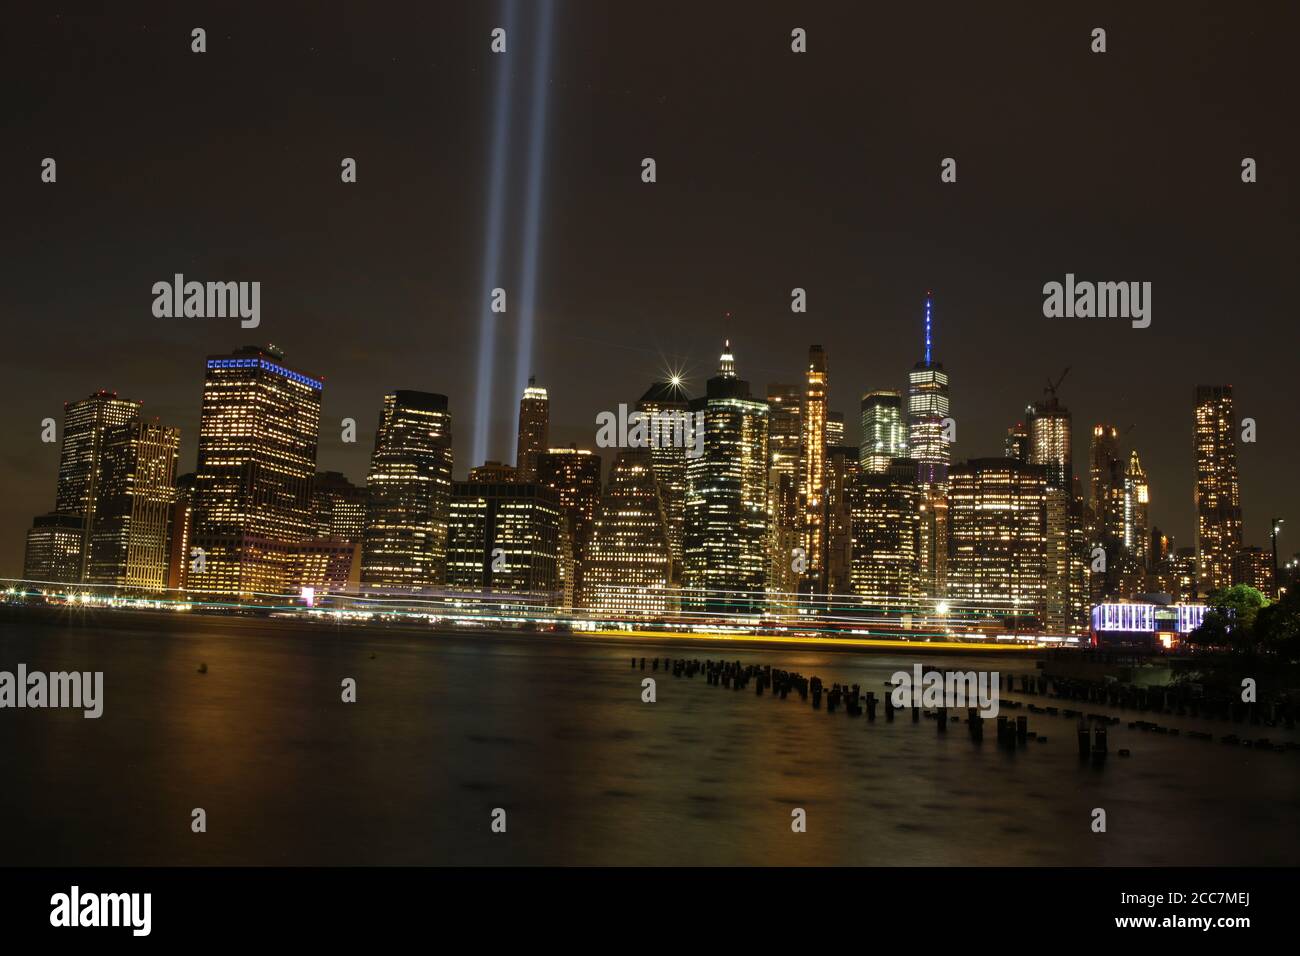 11 septembre mémorial et lumières en hommage à New York. Banque D'Images